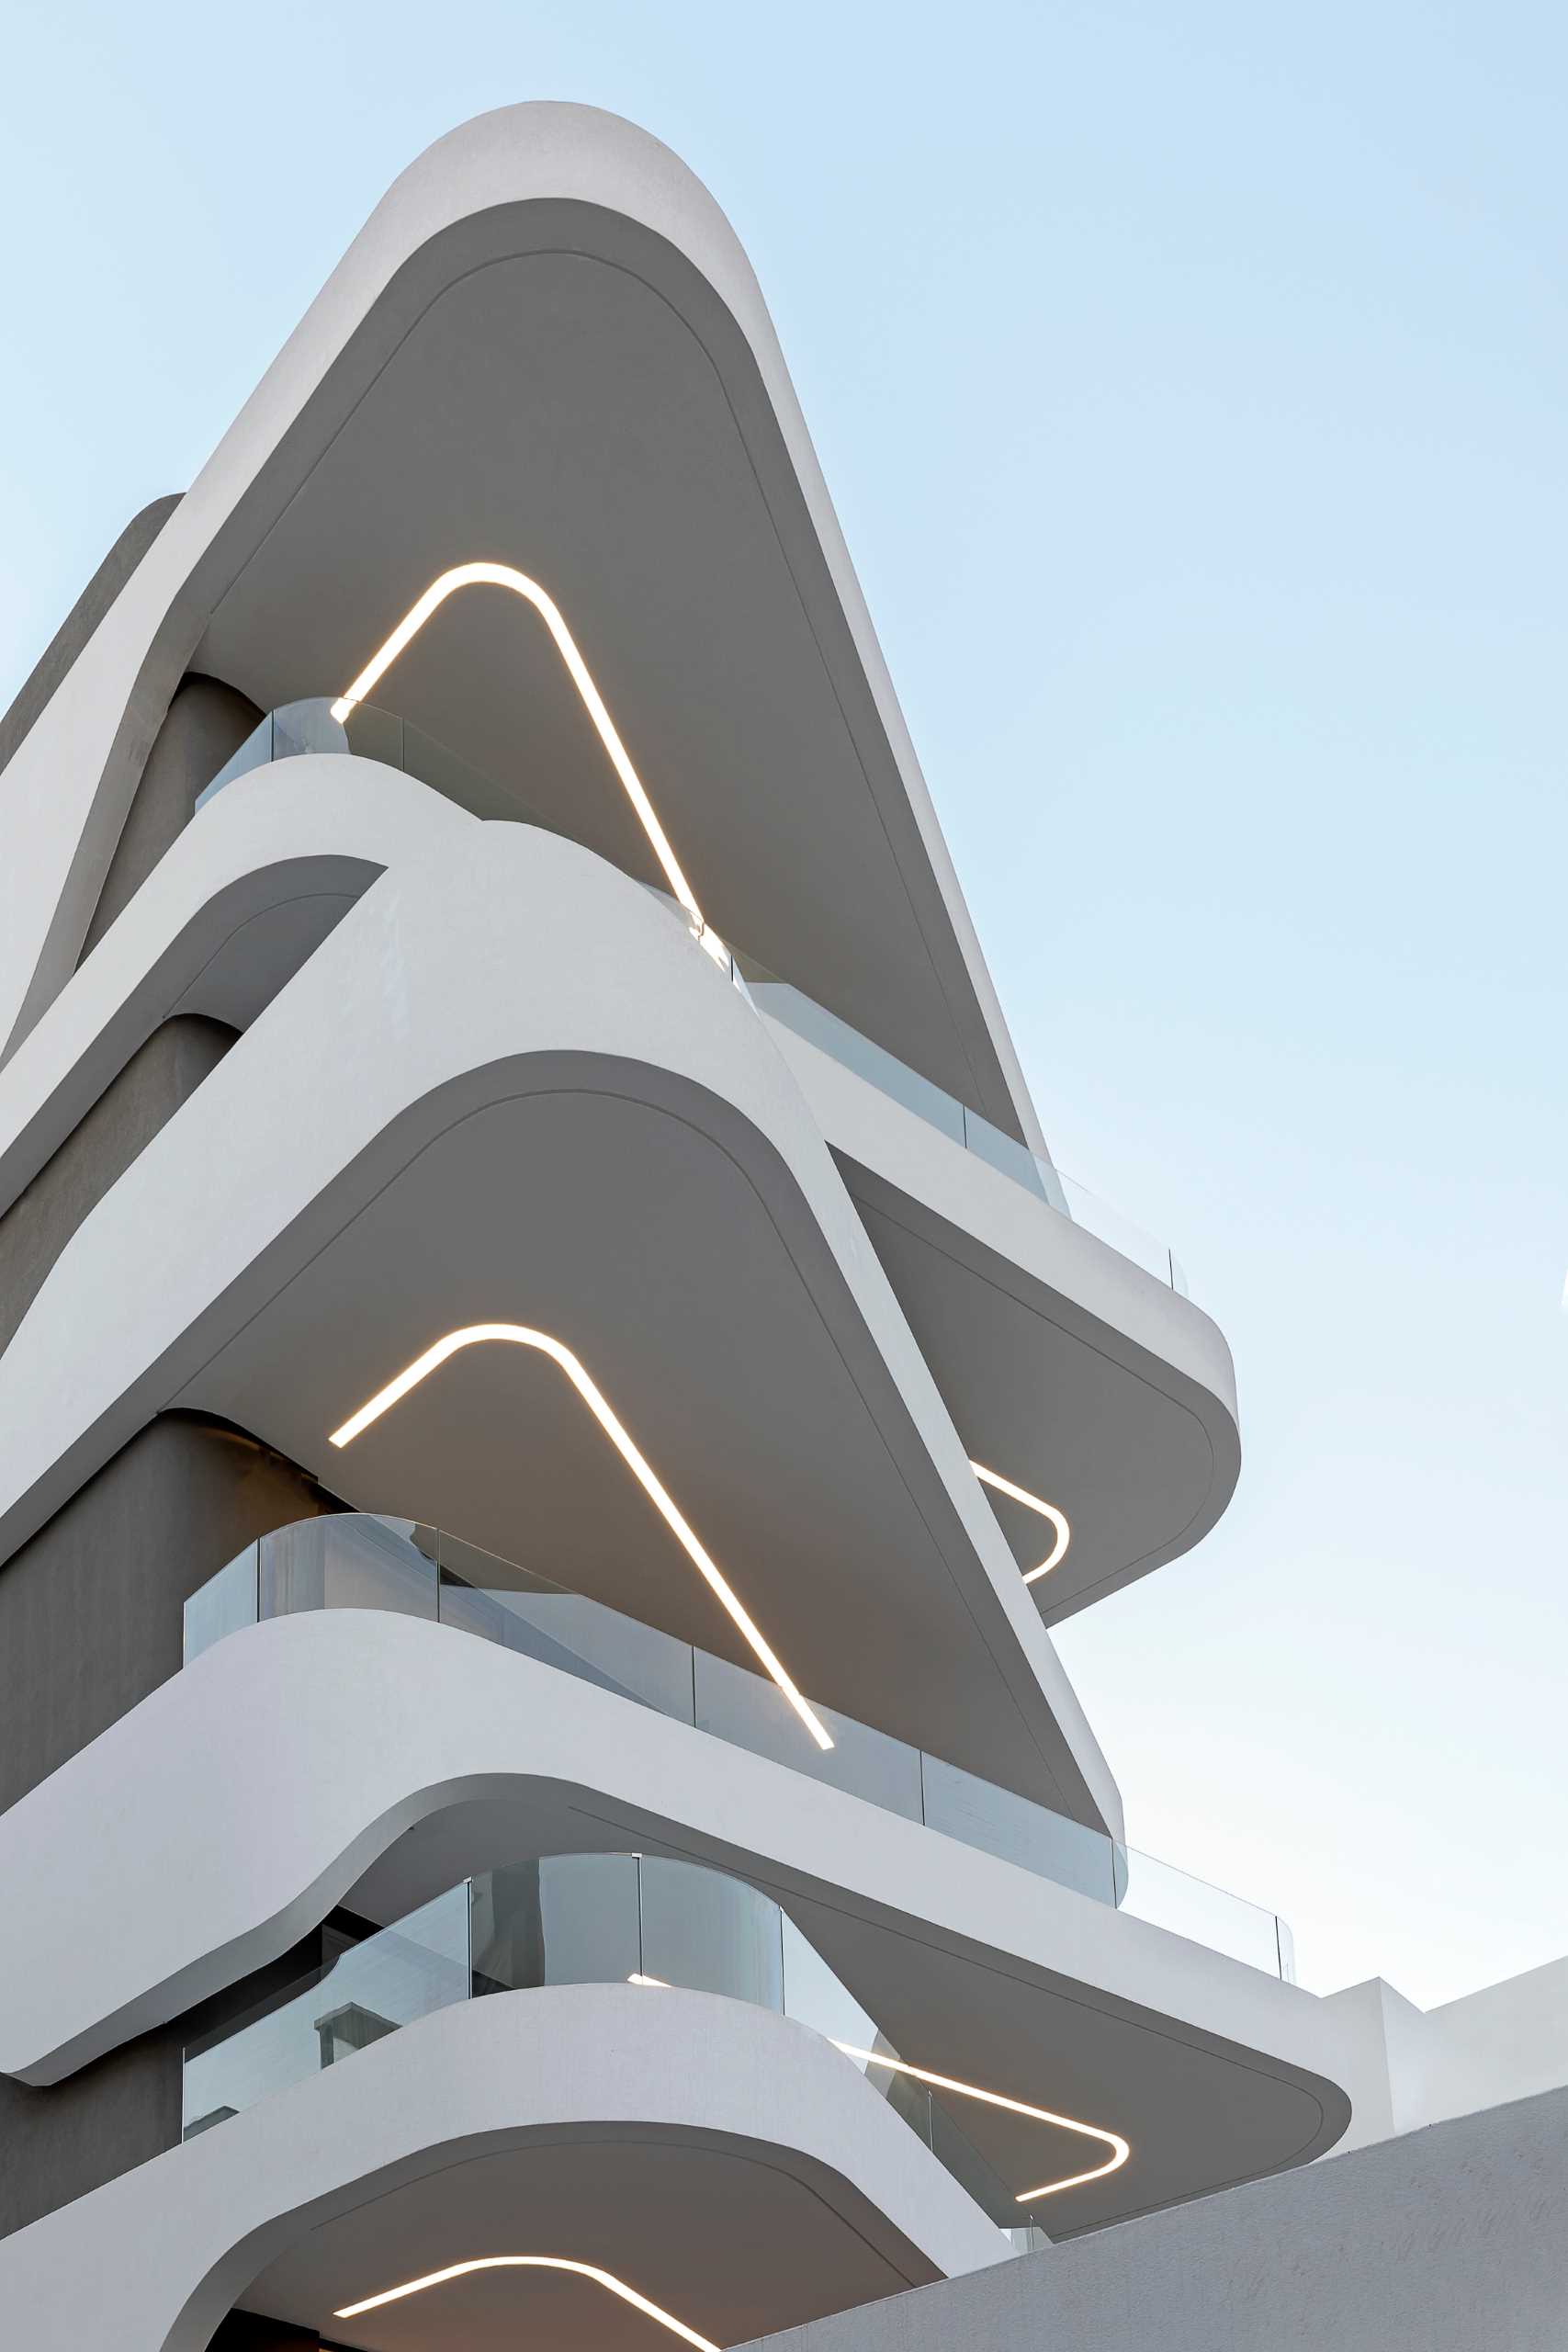 کلید طراحی این ساختمان آپارتم، مدرن، بالکن های منحنی شکل است که جهت های متناوب را تغییر می دهند و نمایی پر جنب و جوش ایجاد می کنند.